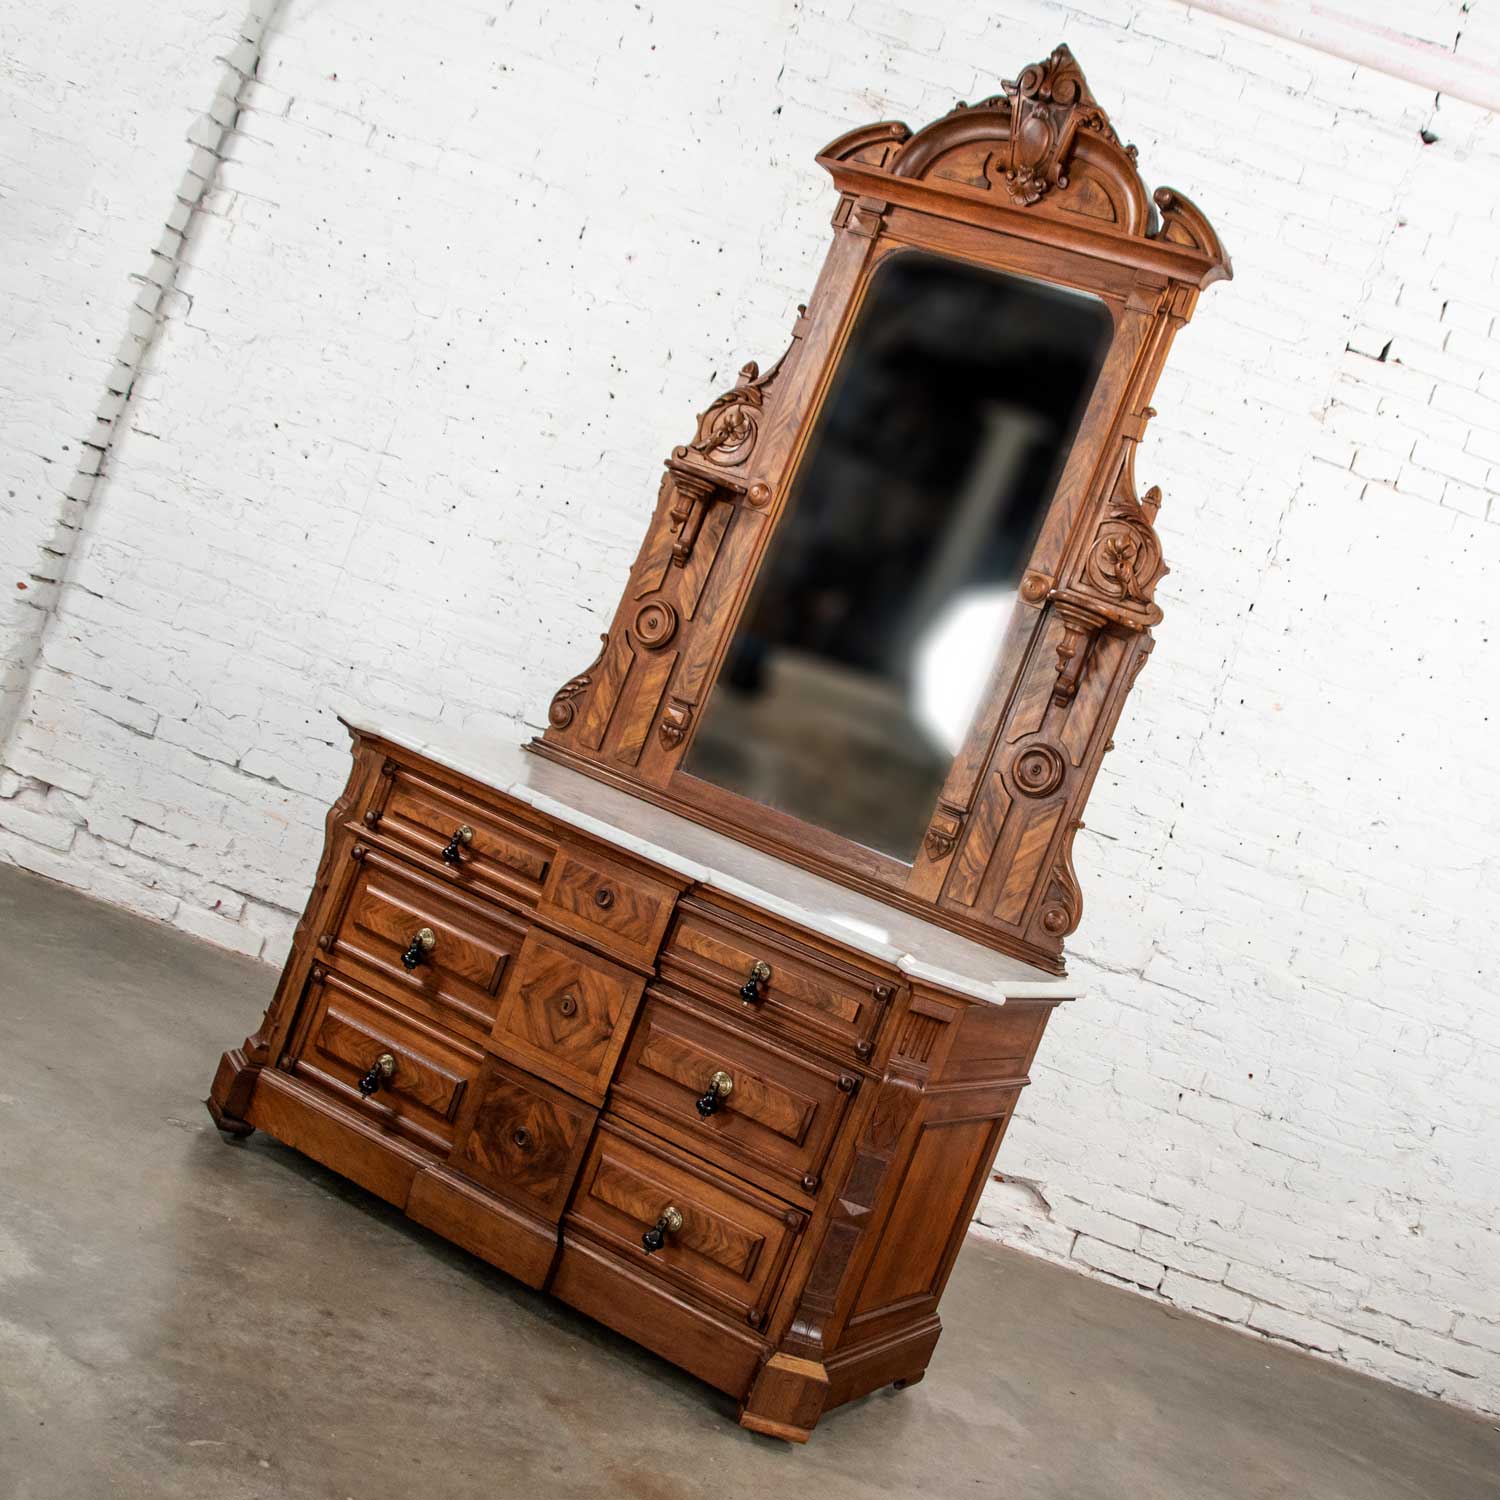 Antique Victorian Mirrored Dresser in Walnut & Burl Walnut with White Marble Top